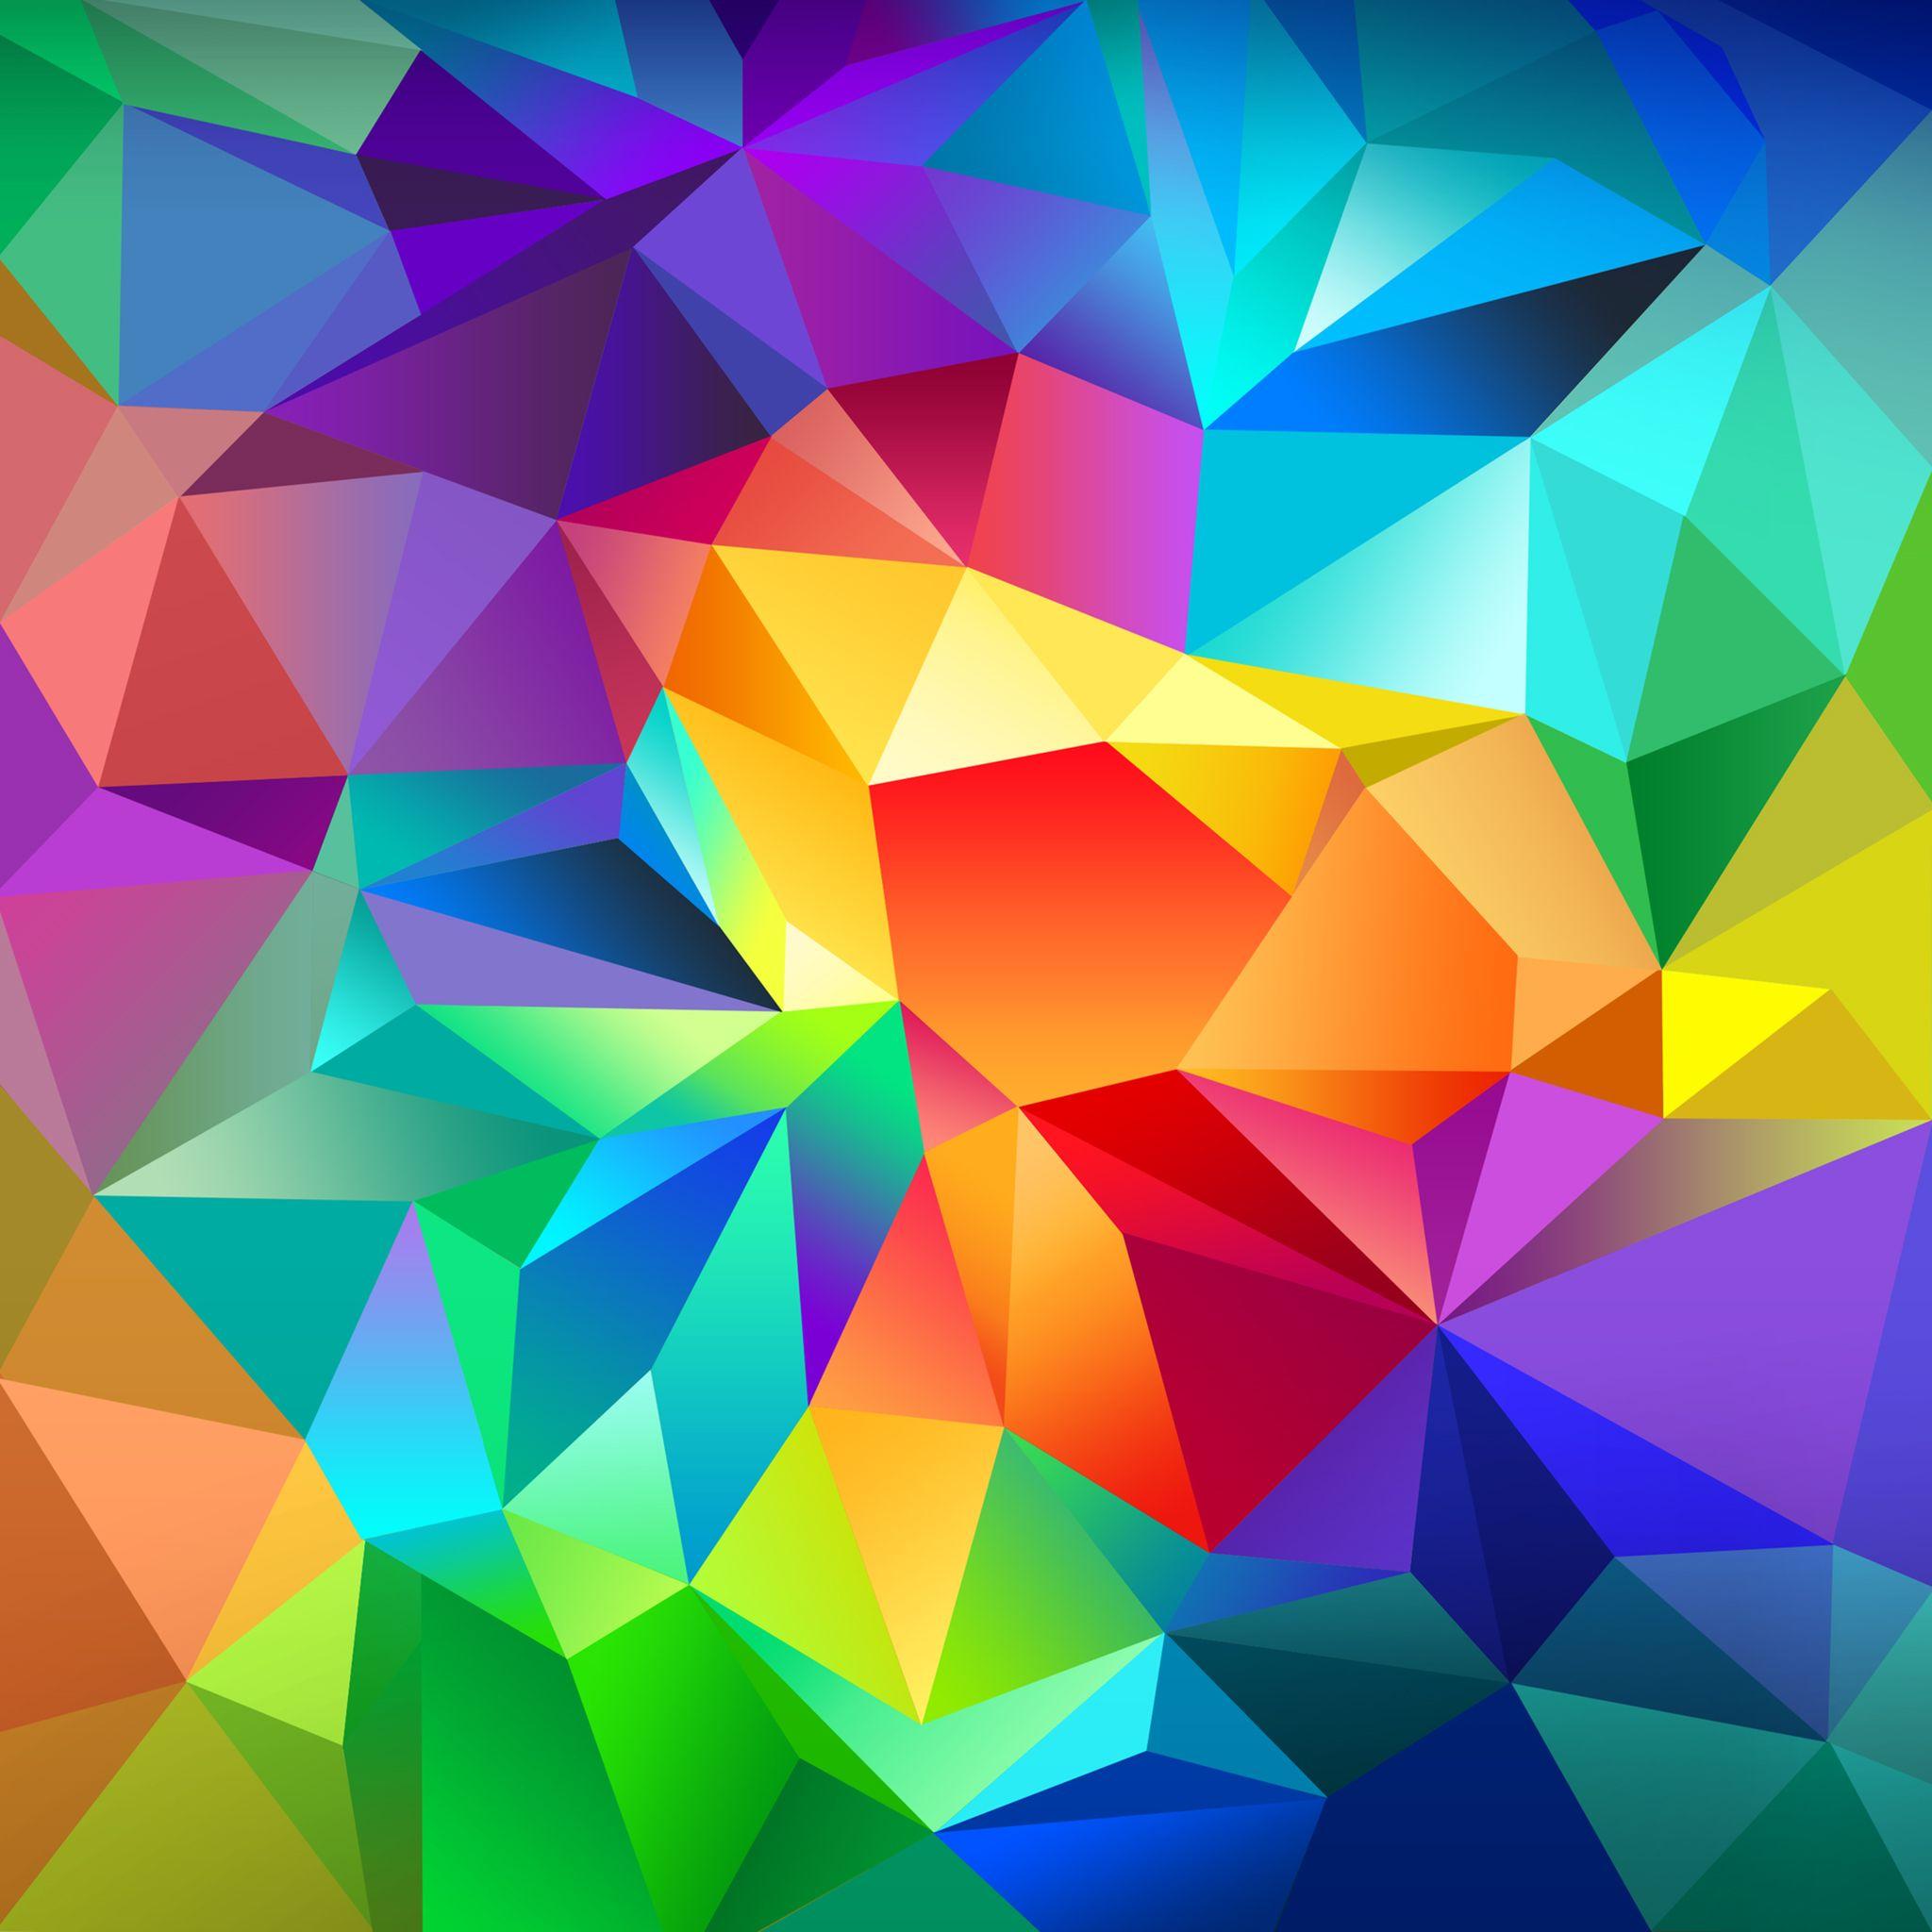 Colors Wallpaper, Fine HDQ Colors Image. Gorgeous HQFX Wallpaper